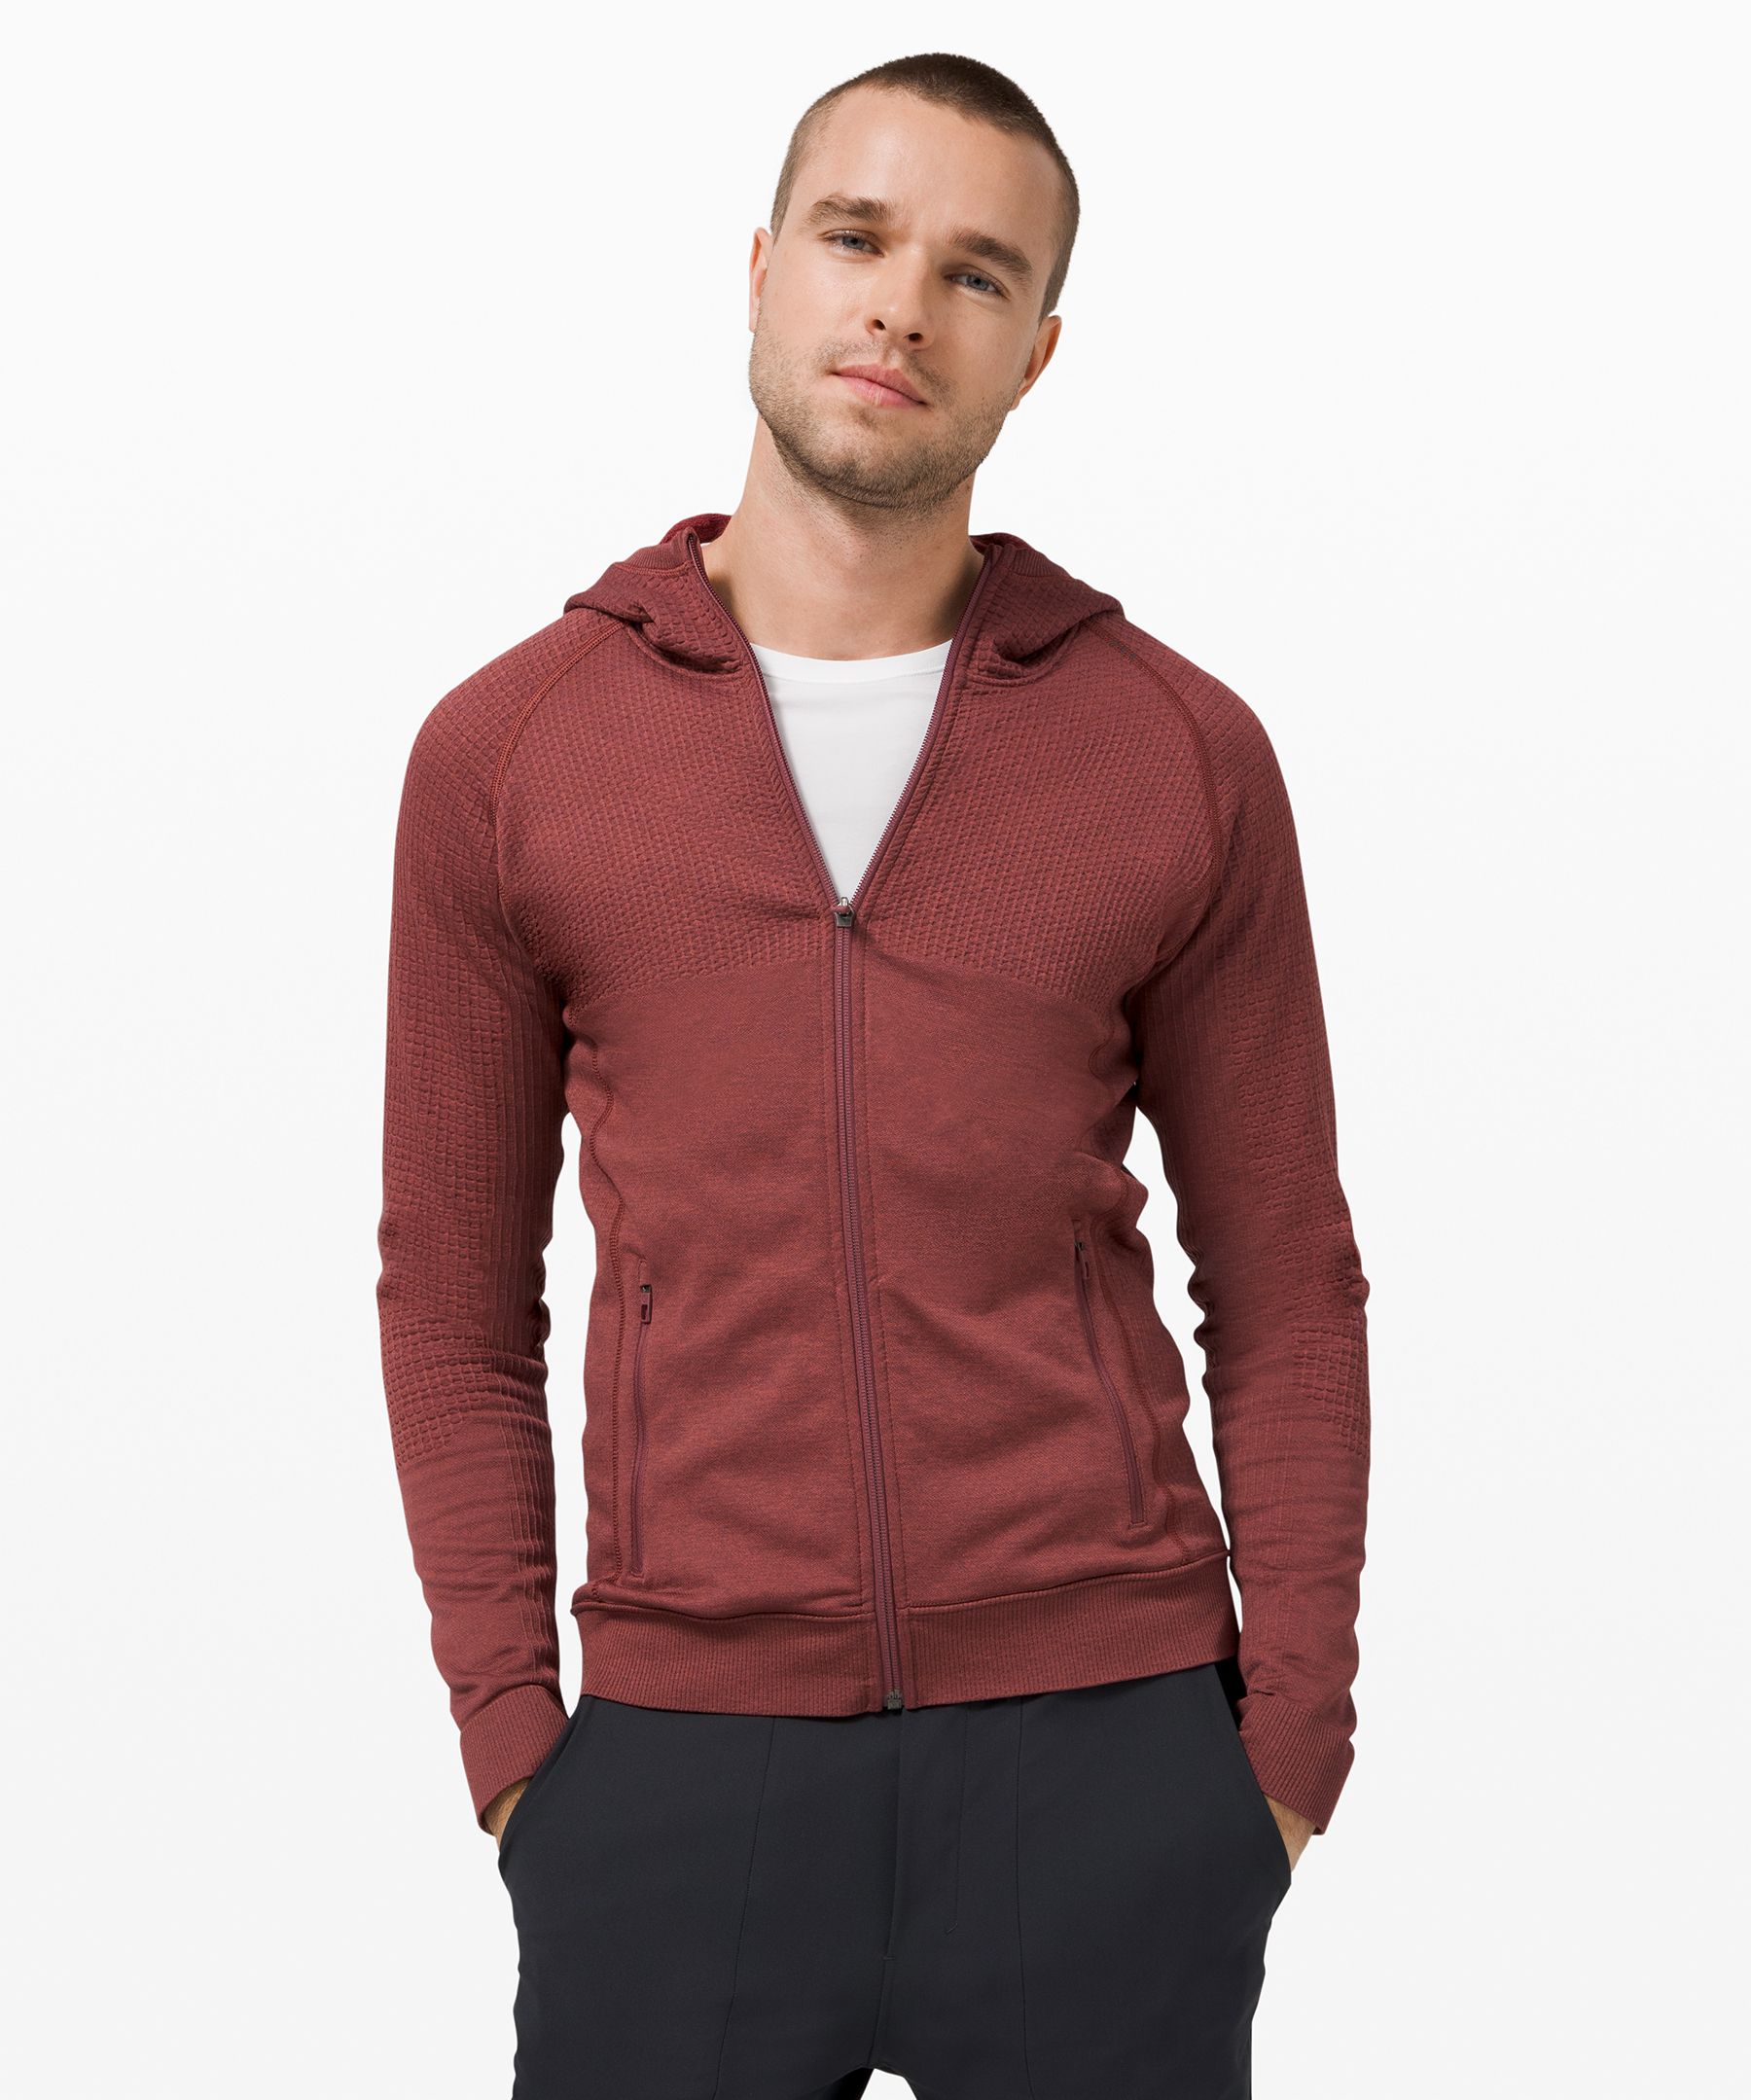 Engineered Warmth Half Zip *Online Only, Men's Hoodies & Sweatshirts